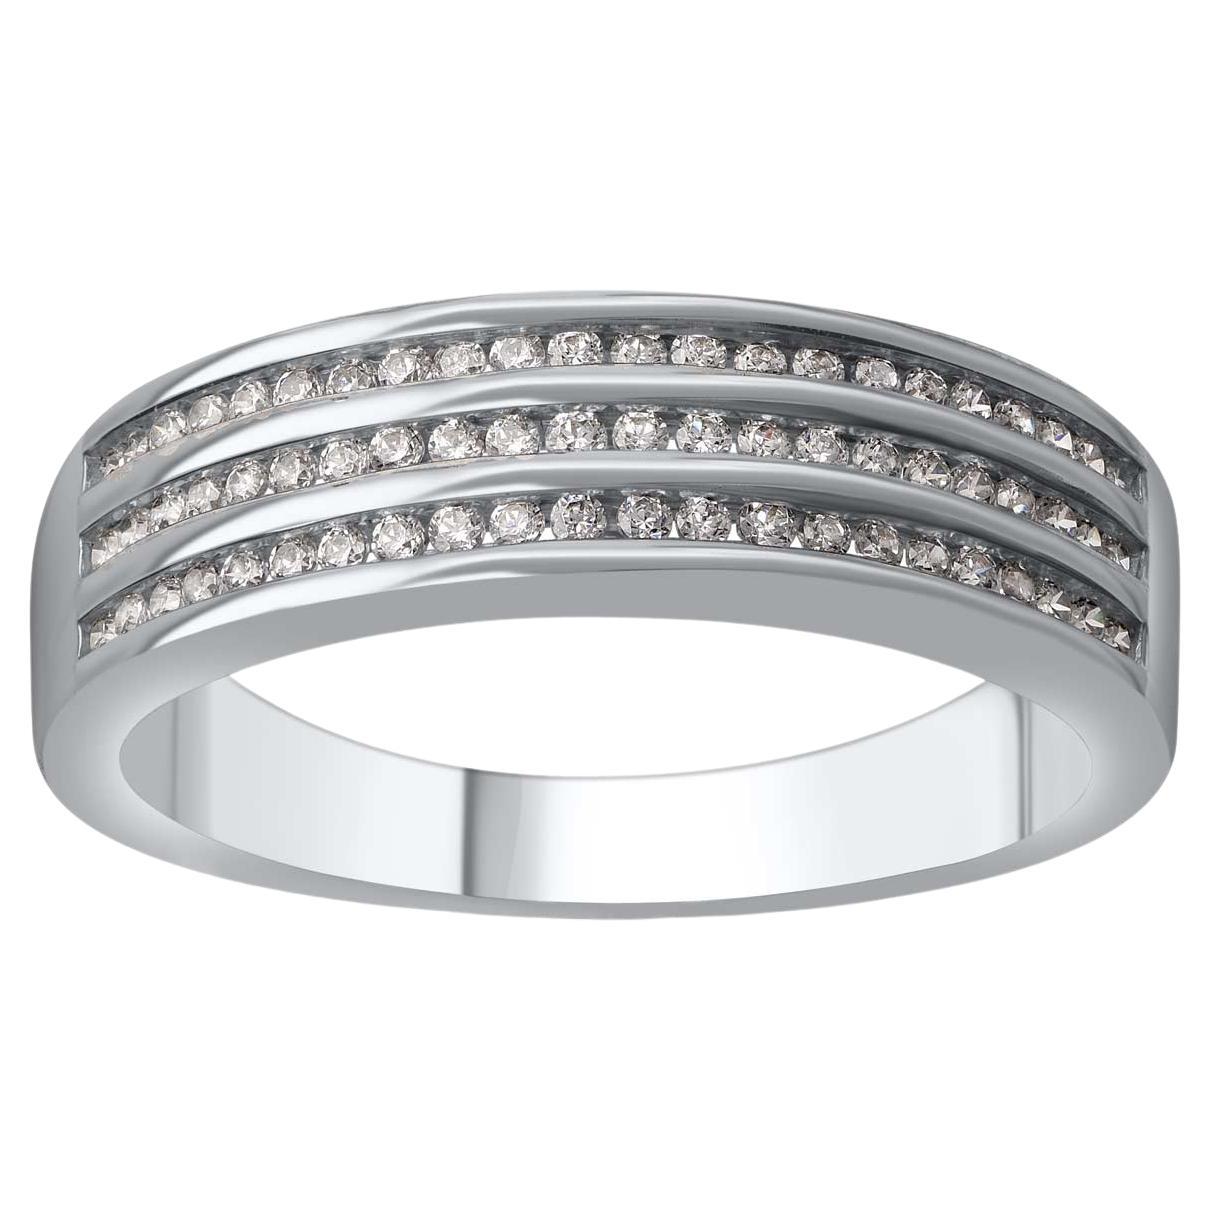 TJD 0.33 Carat Natural Round Cut Diamond 14 Karat White Gold Wedding Band Ring For Sale